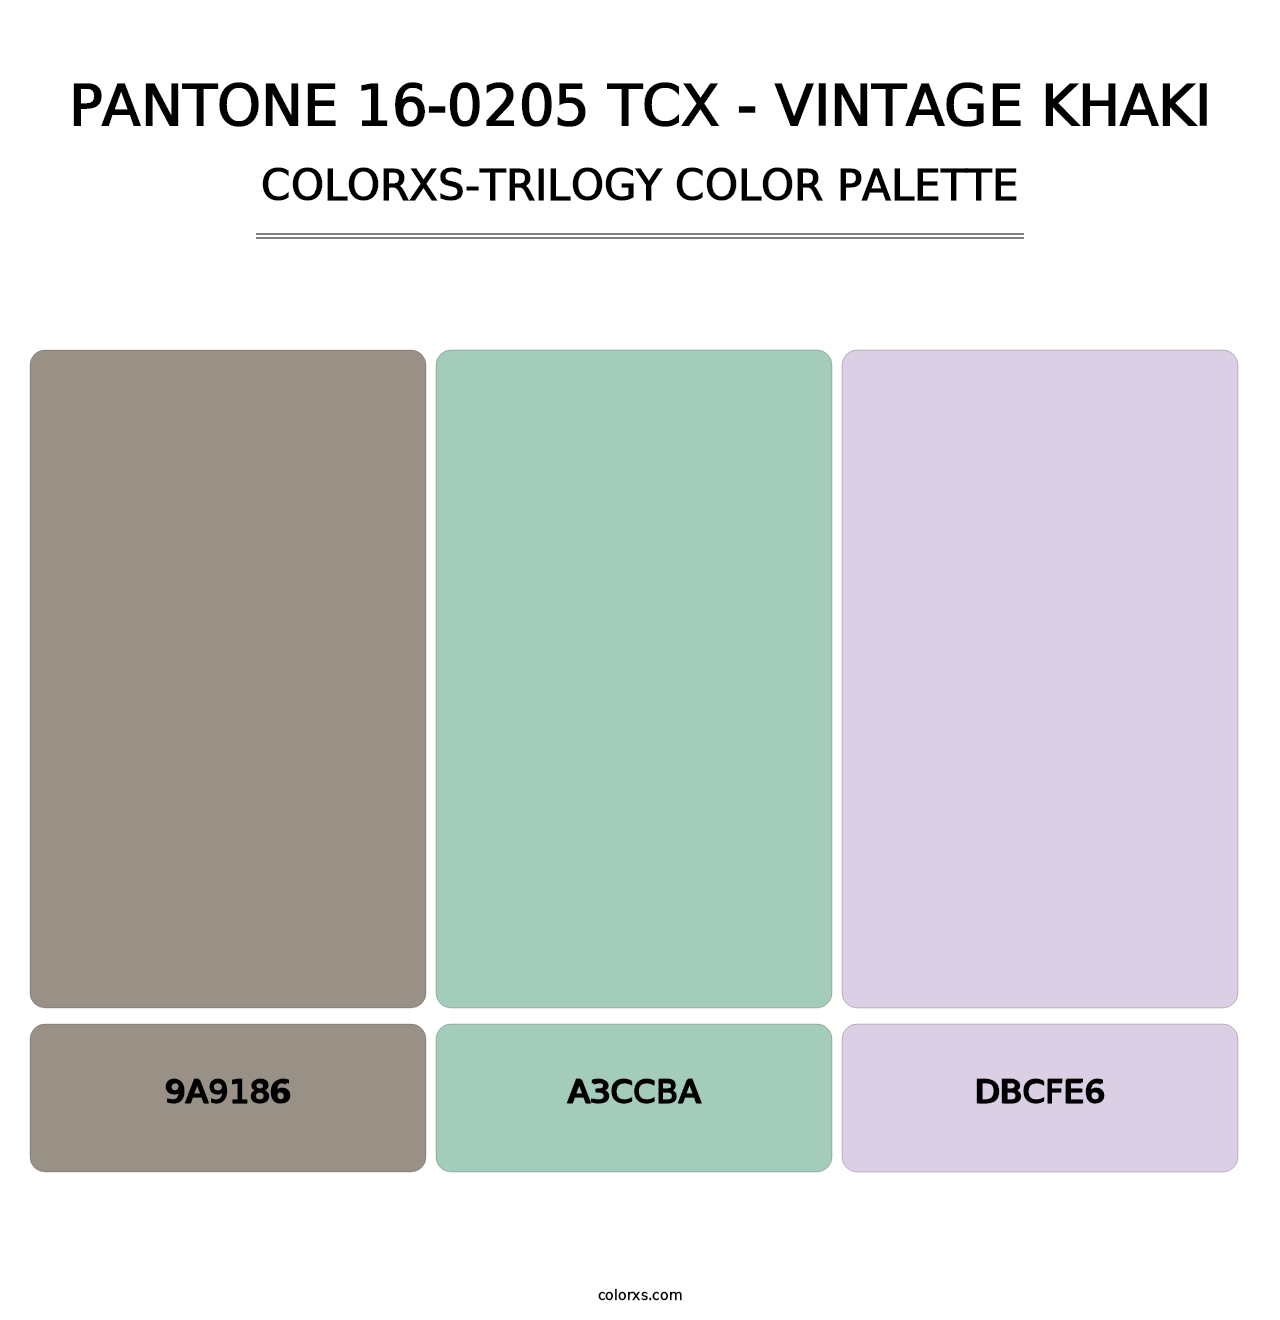 PANTONE 16-0205 TCX - Vintage Khaki - Colorxs Trilogy Palette